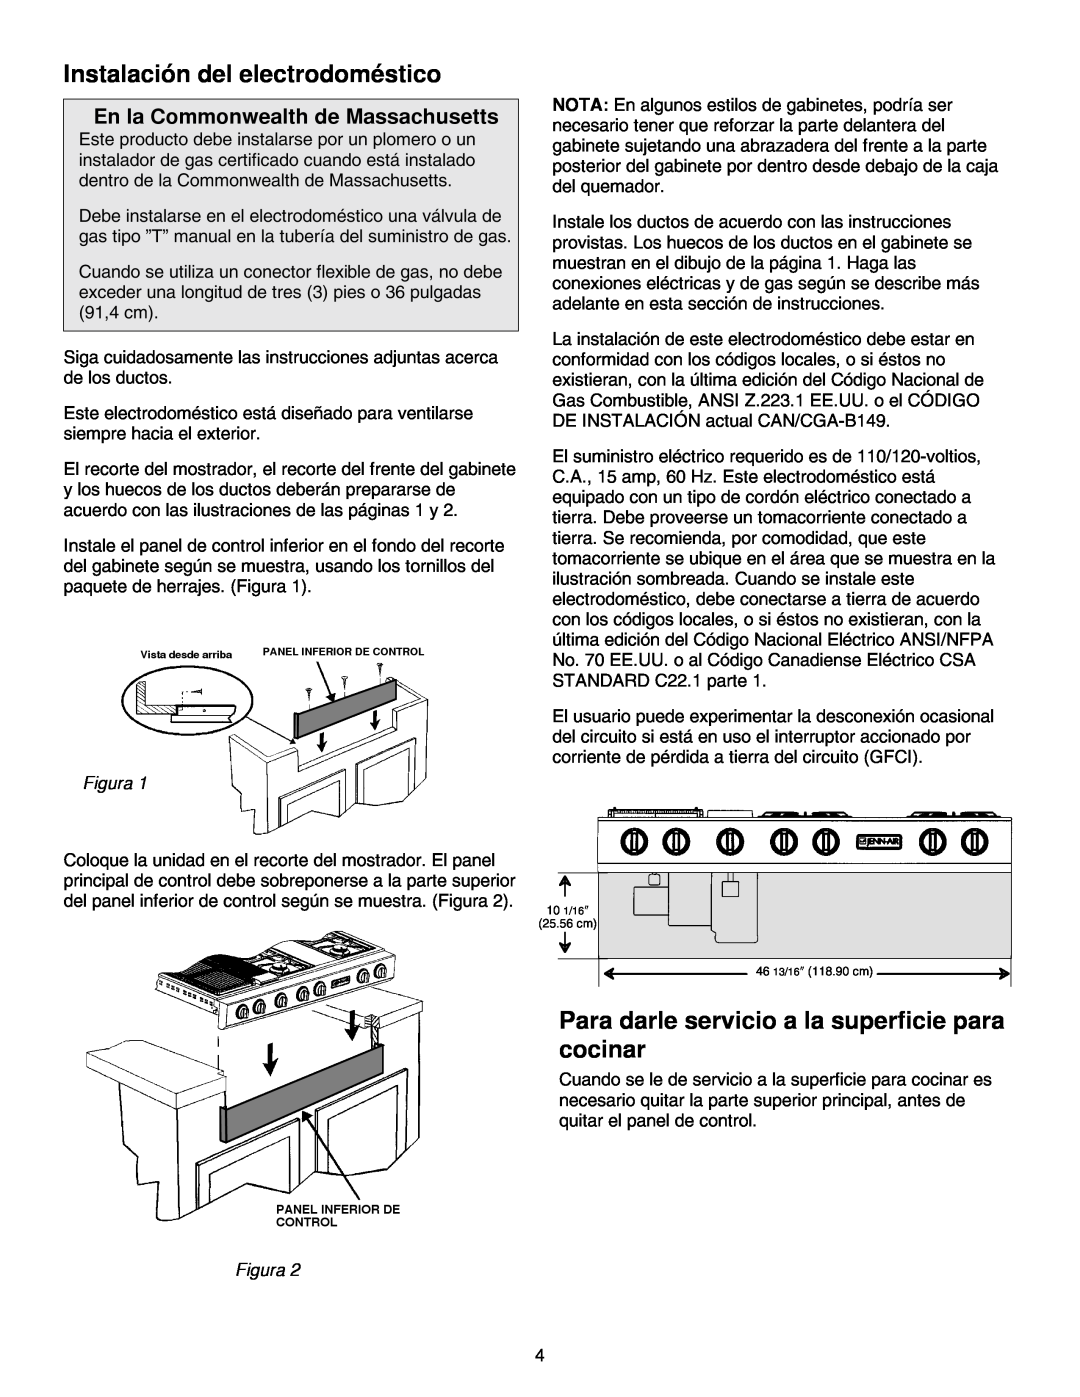 Jenn-Air JGD8348CDP Instalación del electrodoméstico, Para darle servicio a la superficie para cocinar, Figura 